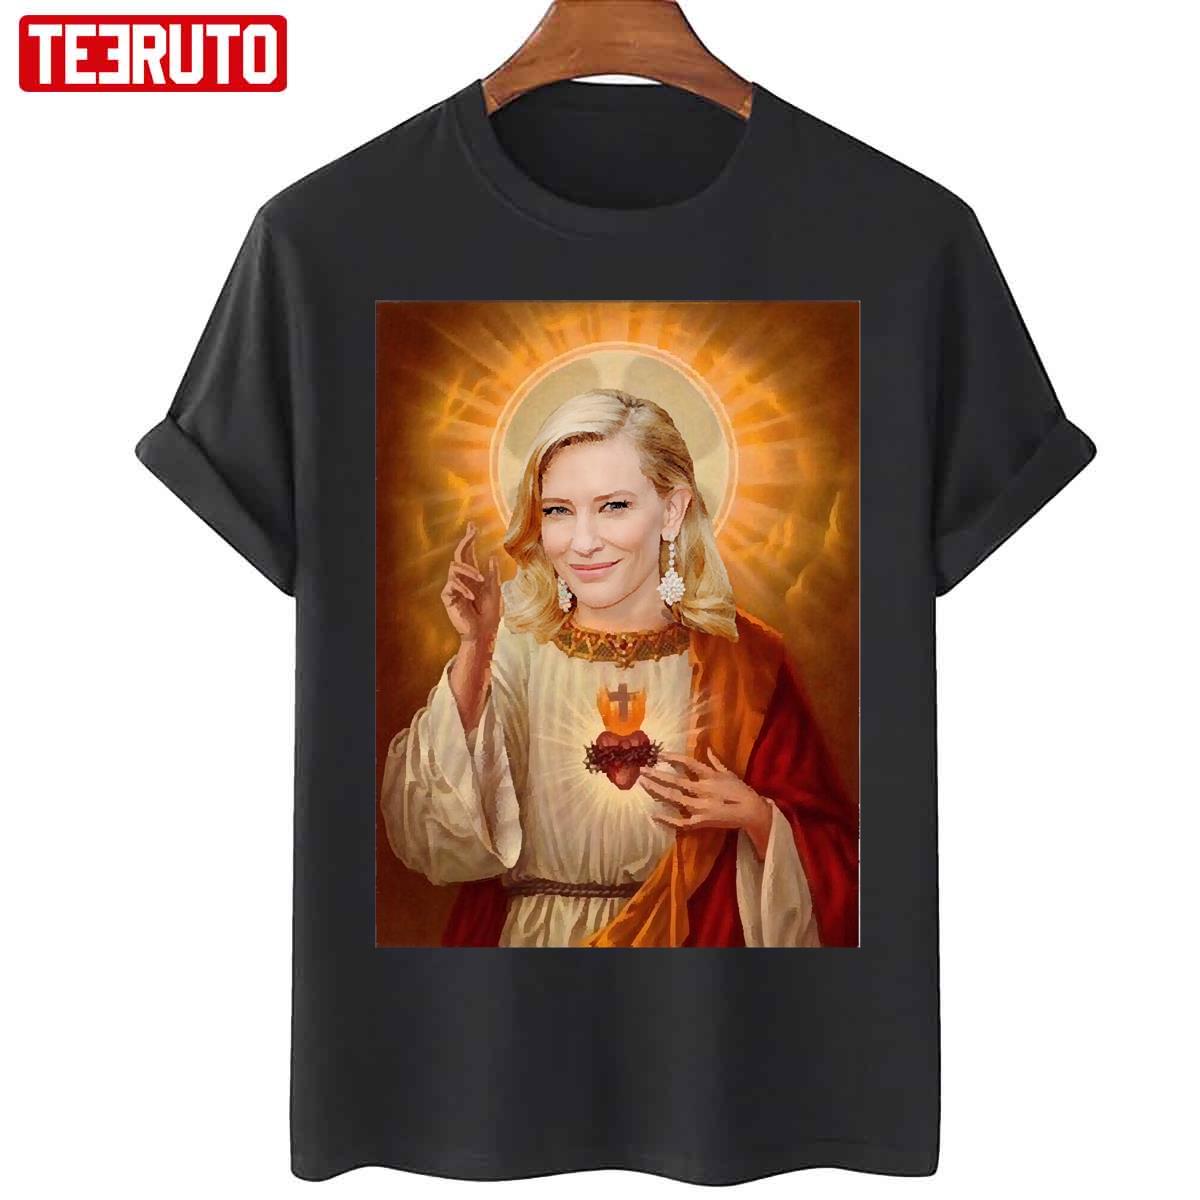 Jesus Cate Blanchett Unisex T-Shirt